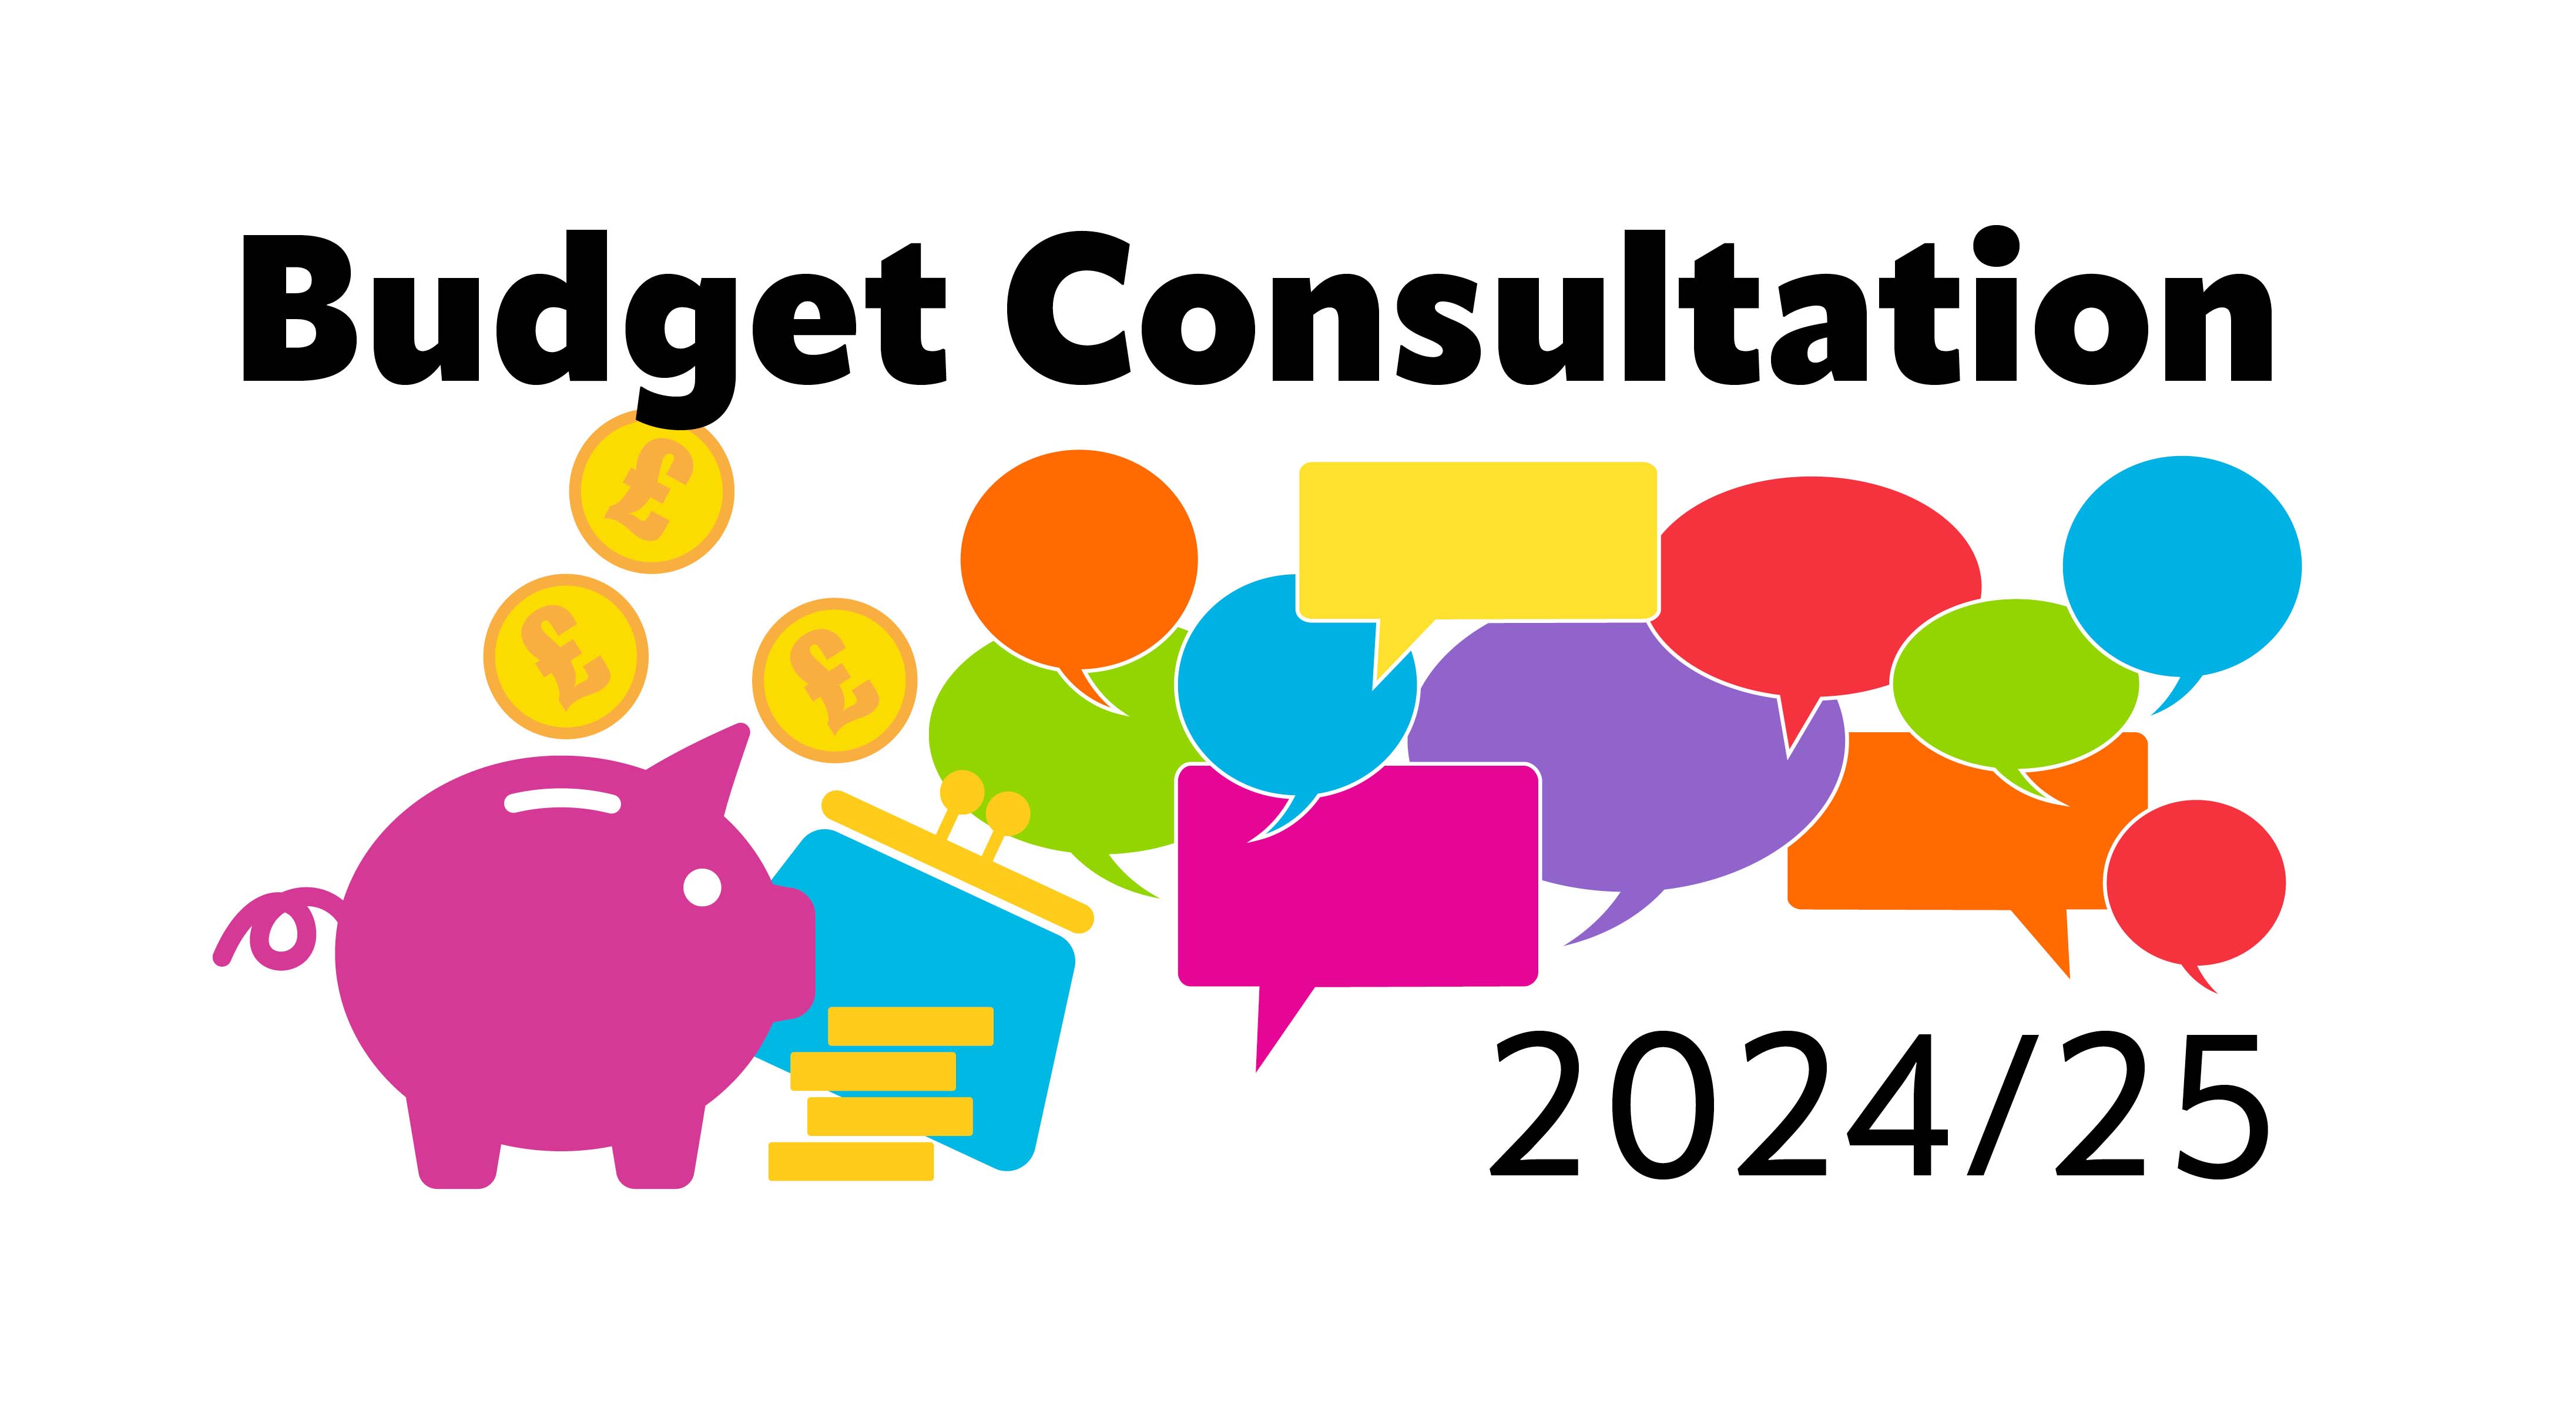 Budget Consultation 2024/25